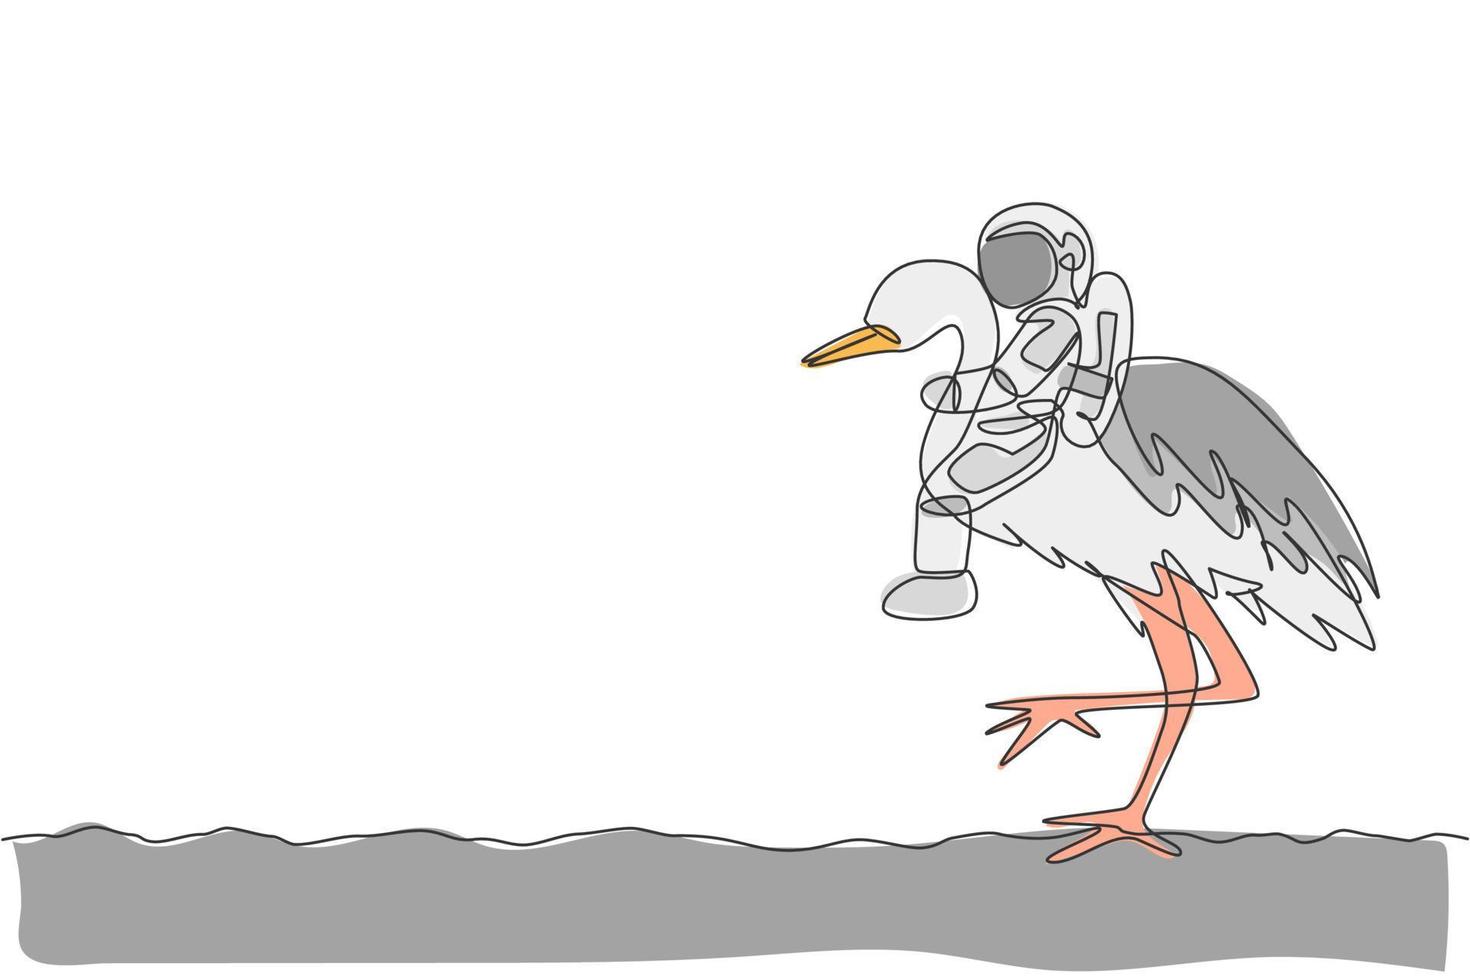 un dessin au trait continu d'un astronaute se promenant sur un oiseau héron, un animal sauvage à la surface de la lune. concept de voyage safari dans l'espace lointain. illustration vectorielle de dessin graphique à une seule ligne dynamique vecteur